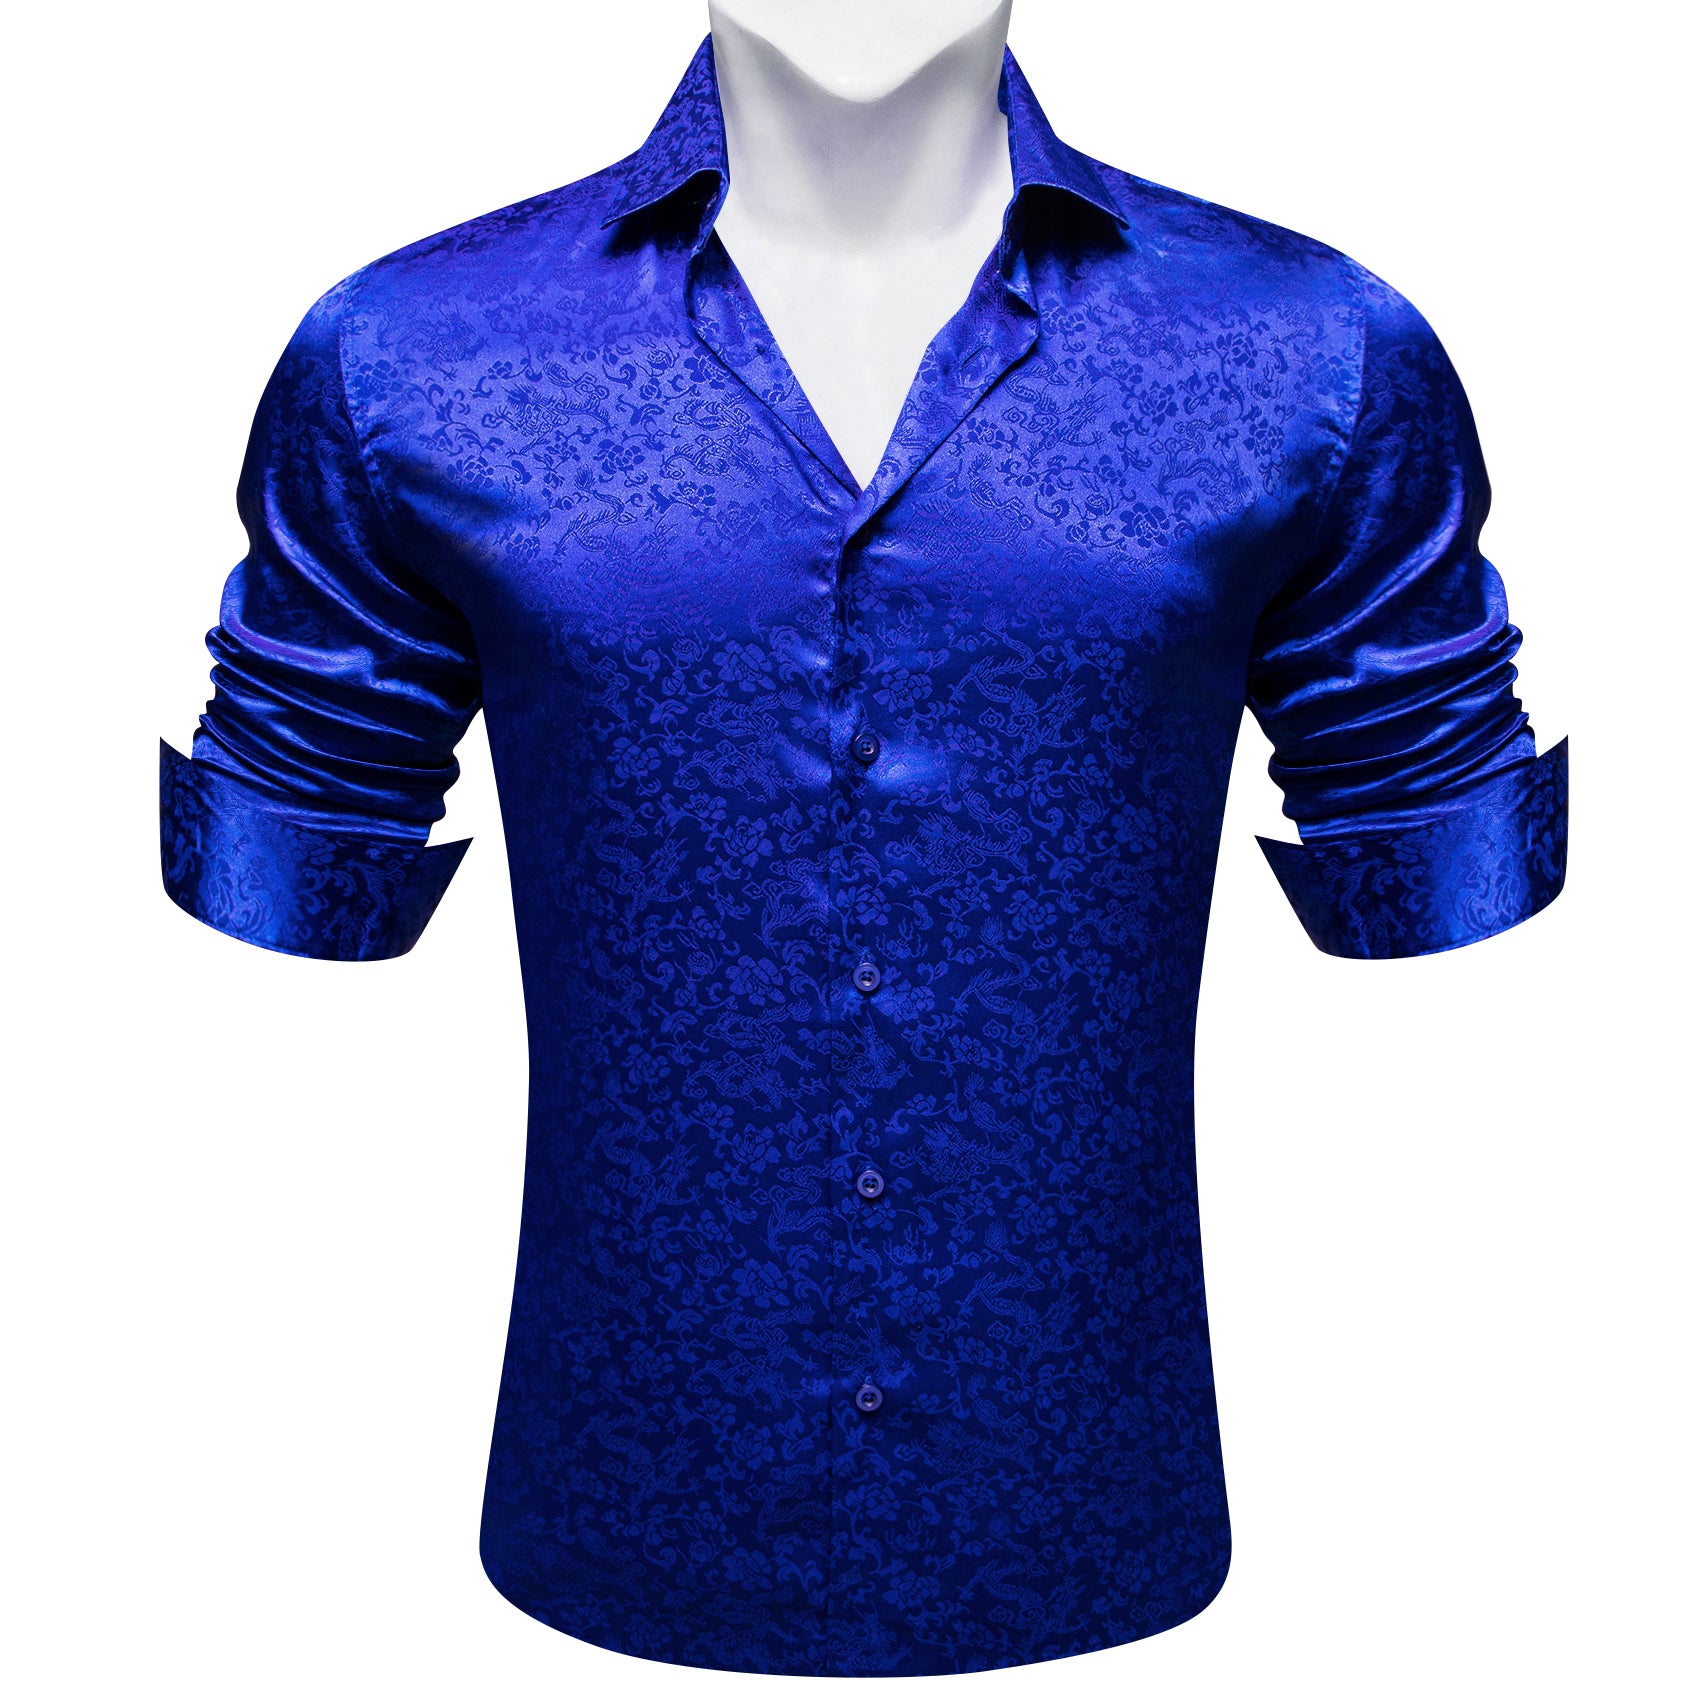 Barry.wang Cobalt Blue Floral Silk Men's Shirt